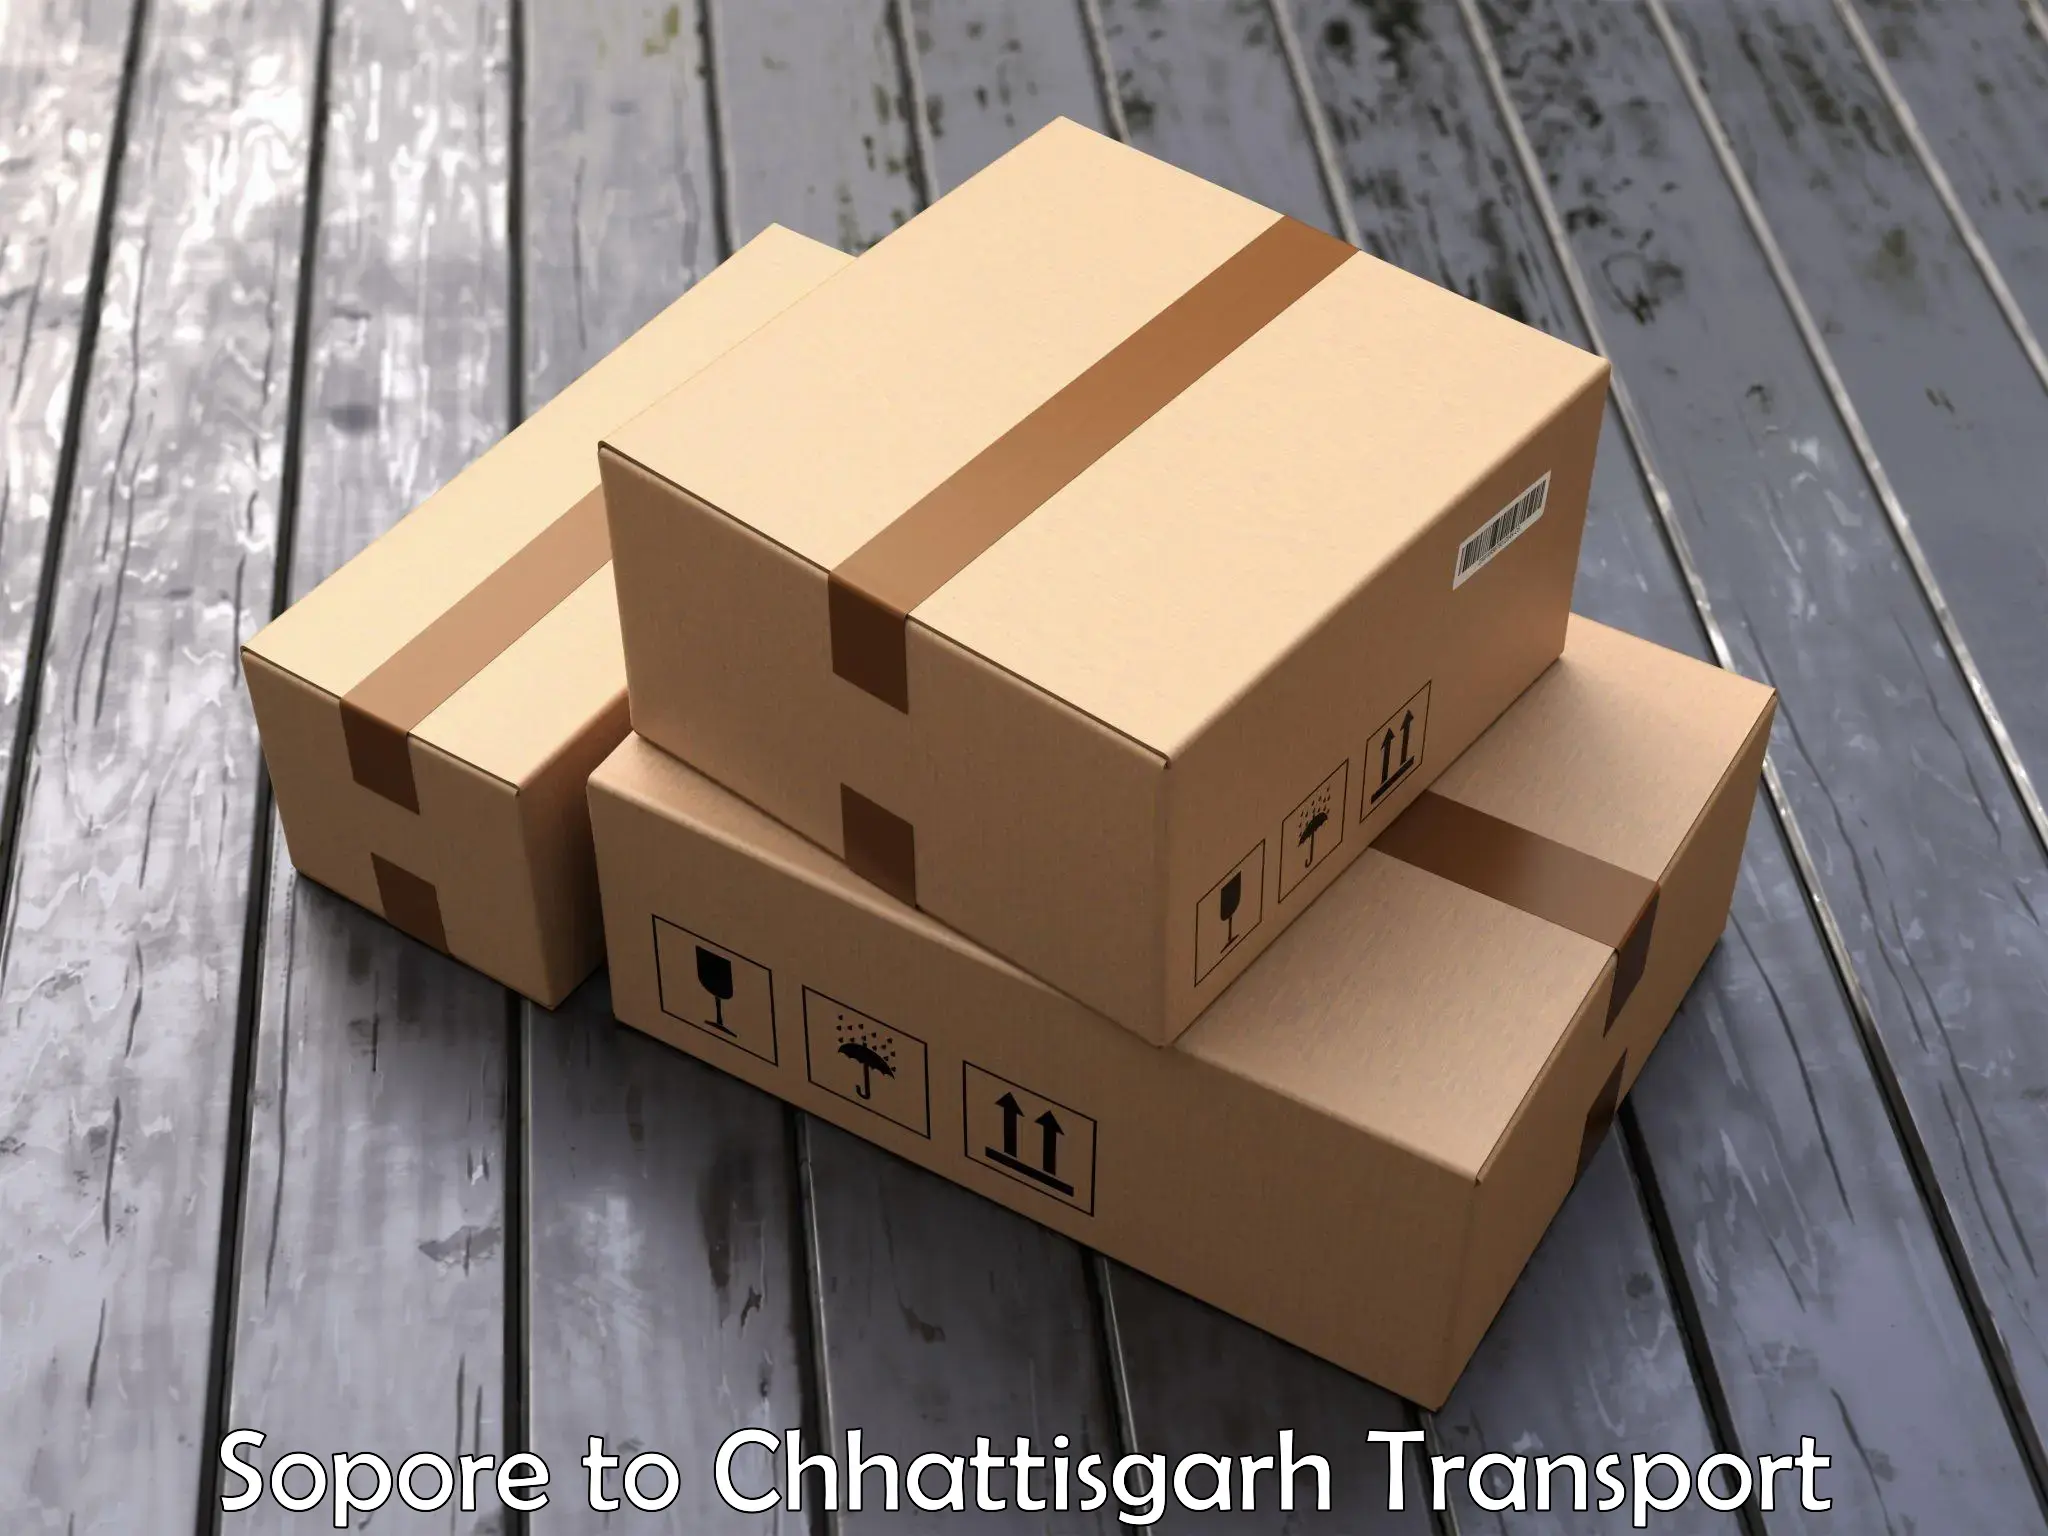 Furniture transport service Sopore to Sakti